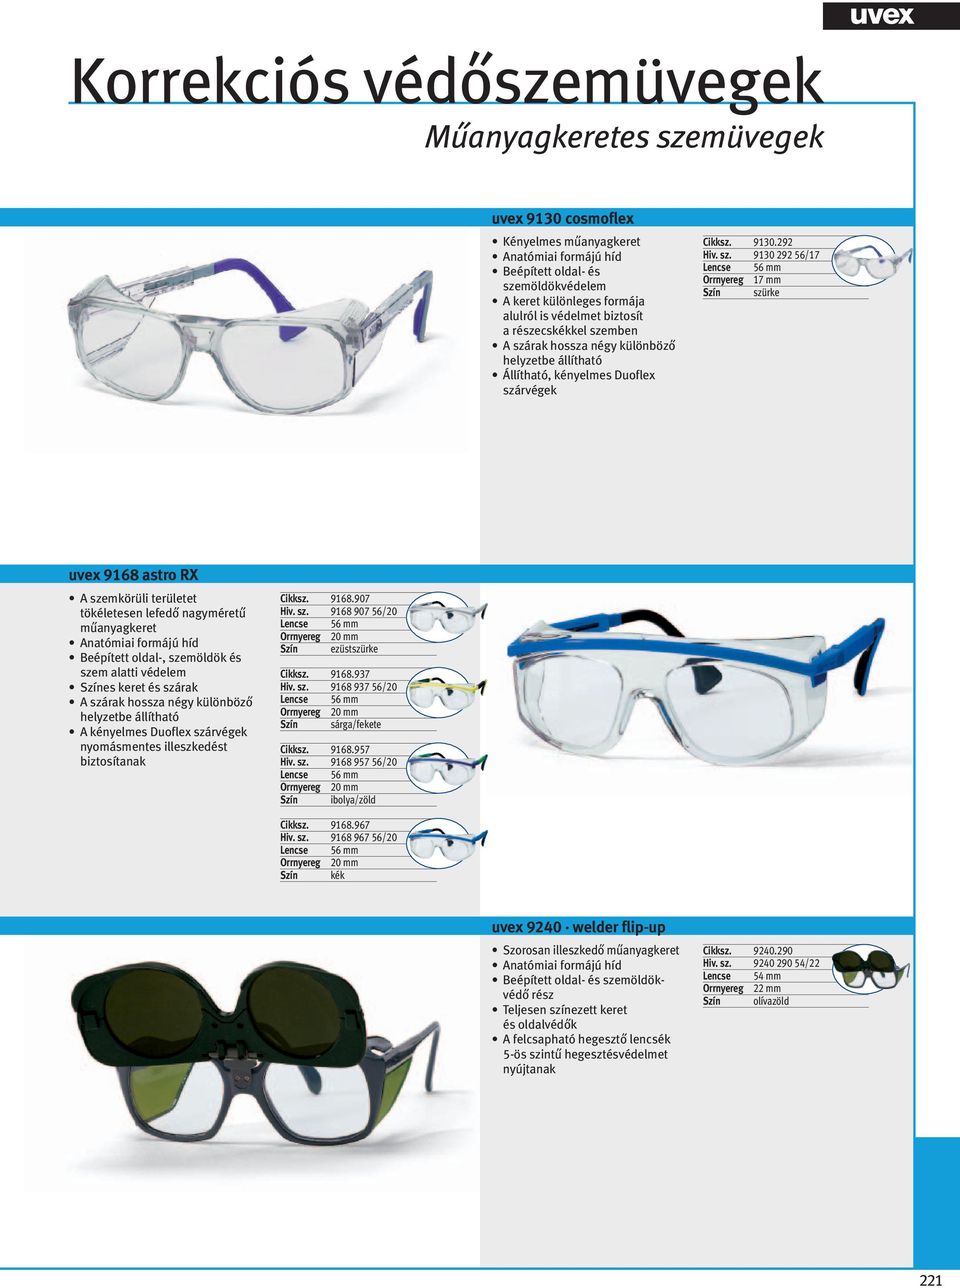 Korrekciós védőszemüvegek. Tökéletes védelem az Ön igényeire szabva - PDF  Free Download